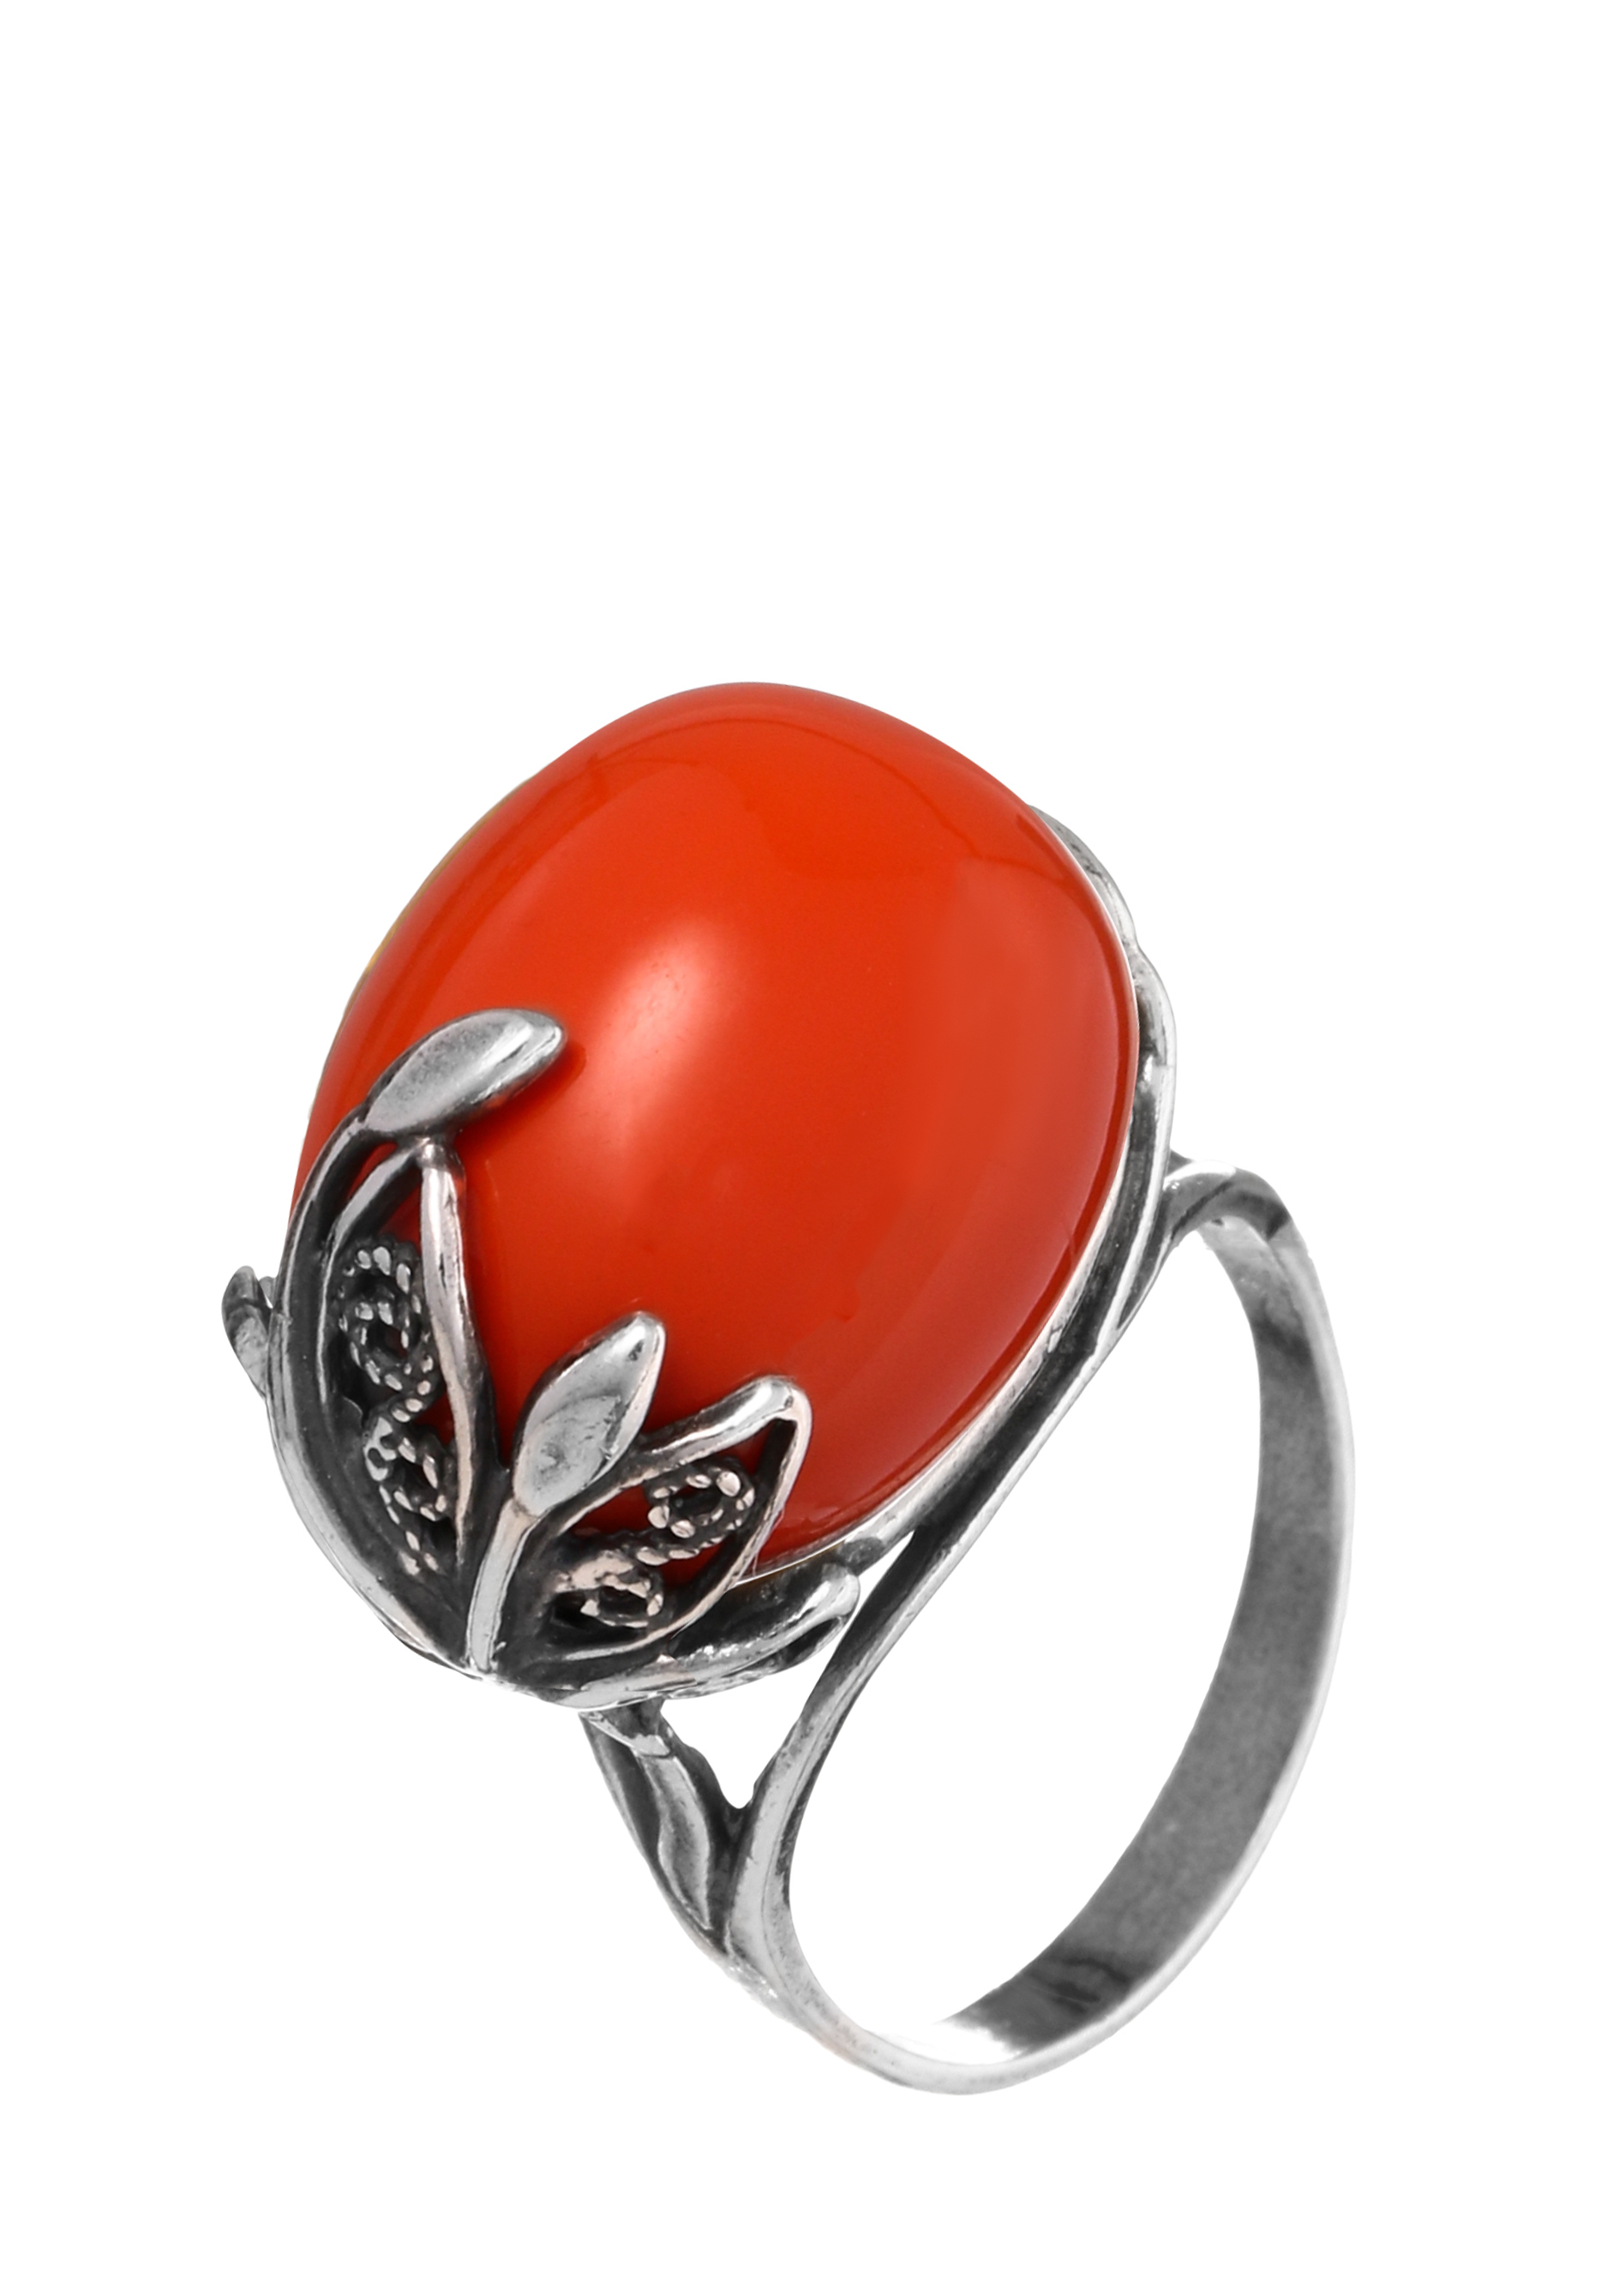 Комплект "Водная стихия" (серьги+кольцо) Silver Star, цвет мультиколор, размер 18 перстень - фото 4